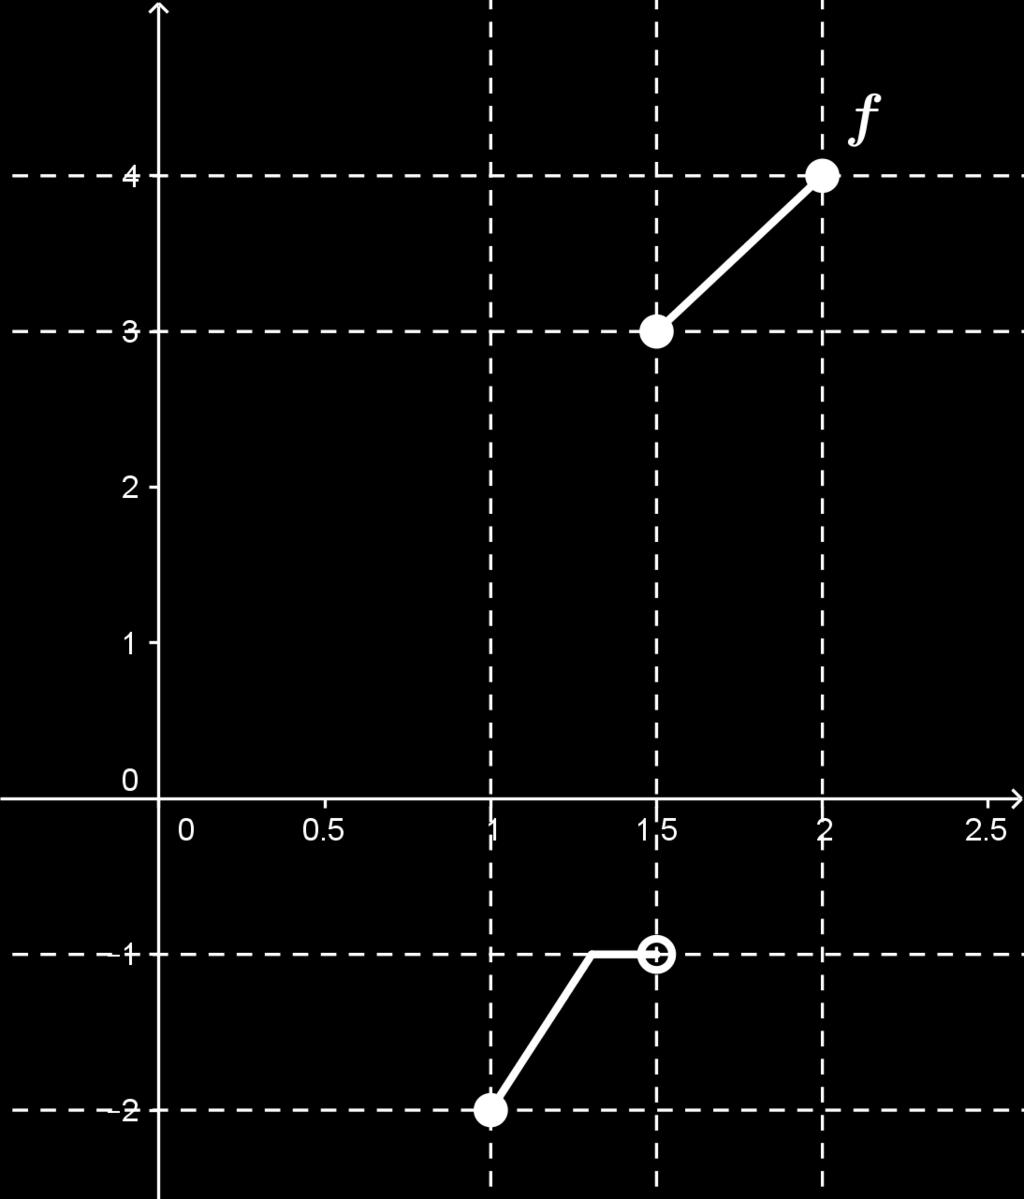 [07] Um exemplo: [08] Exemplos de pontos que pertencem ao gráfico: ( 11 10 11, 12 10 12, 13 10